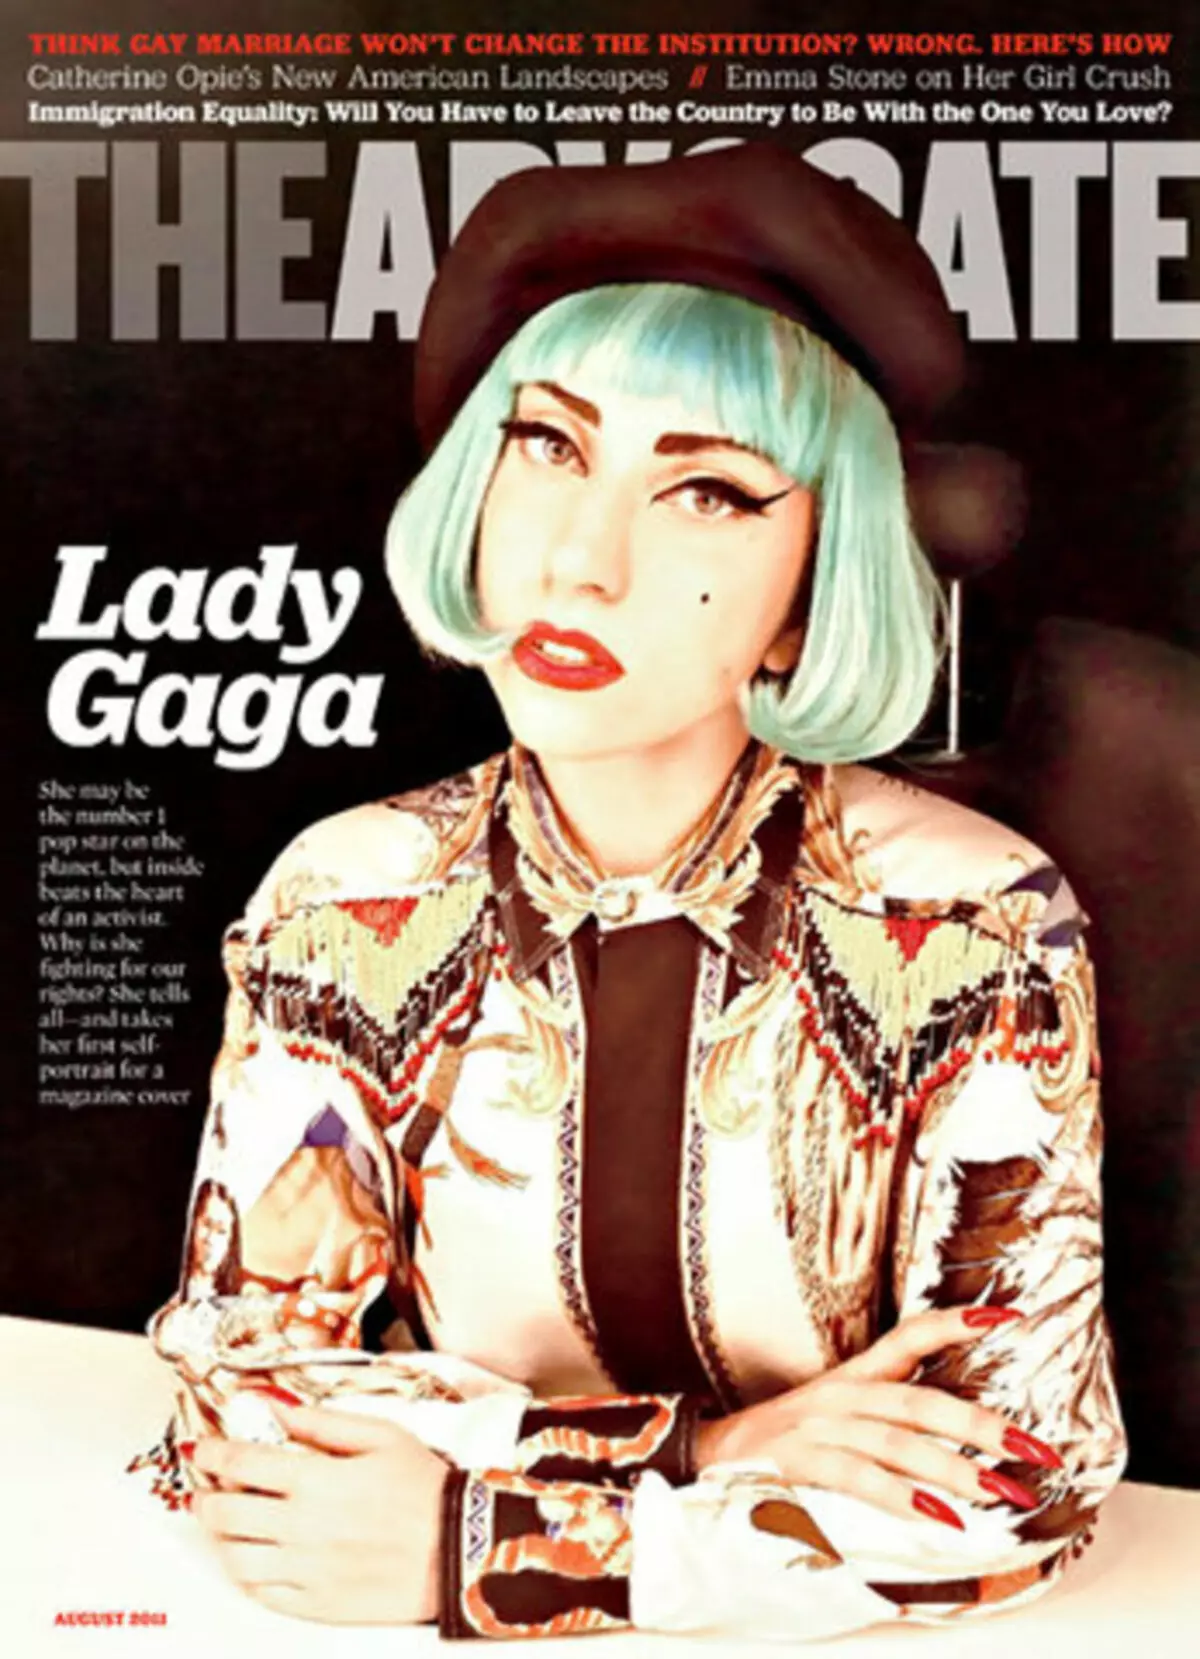 Lady Gaga ofendió por una declaración que manipula la comunidad gay.